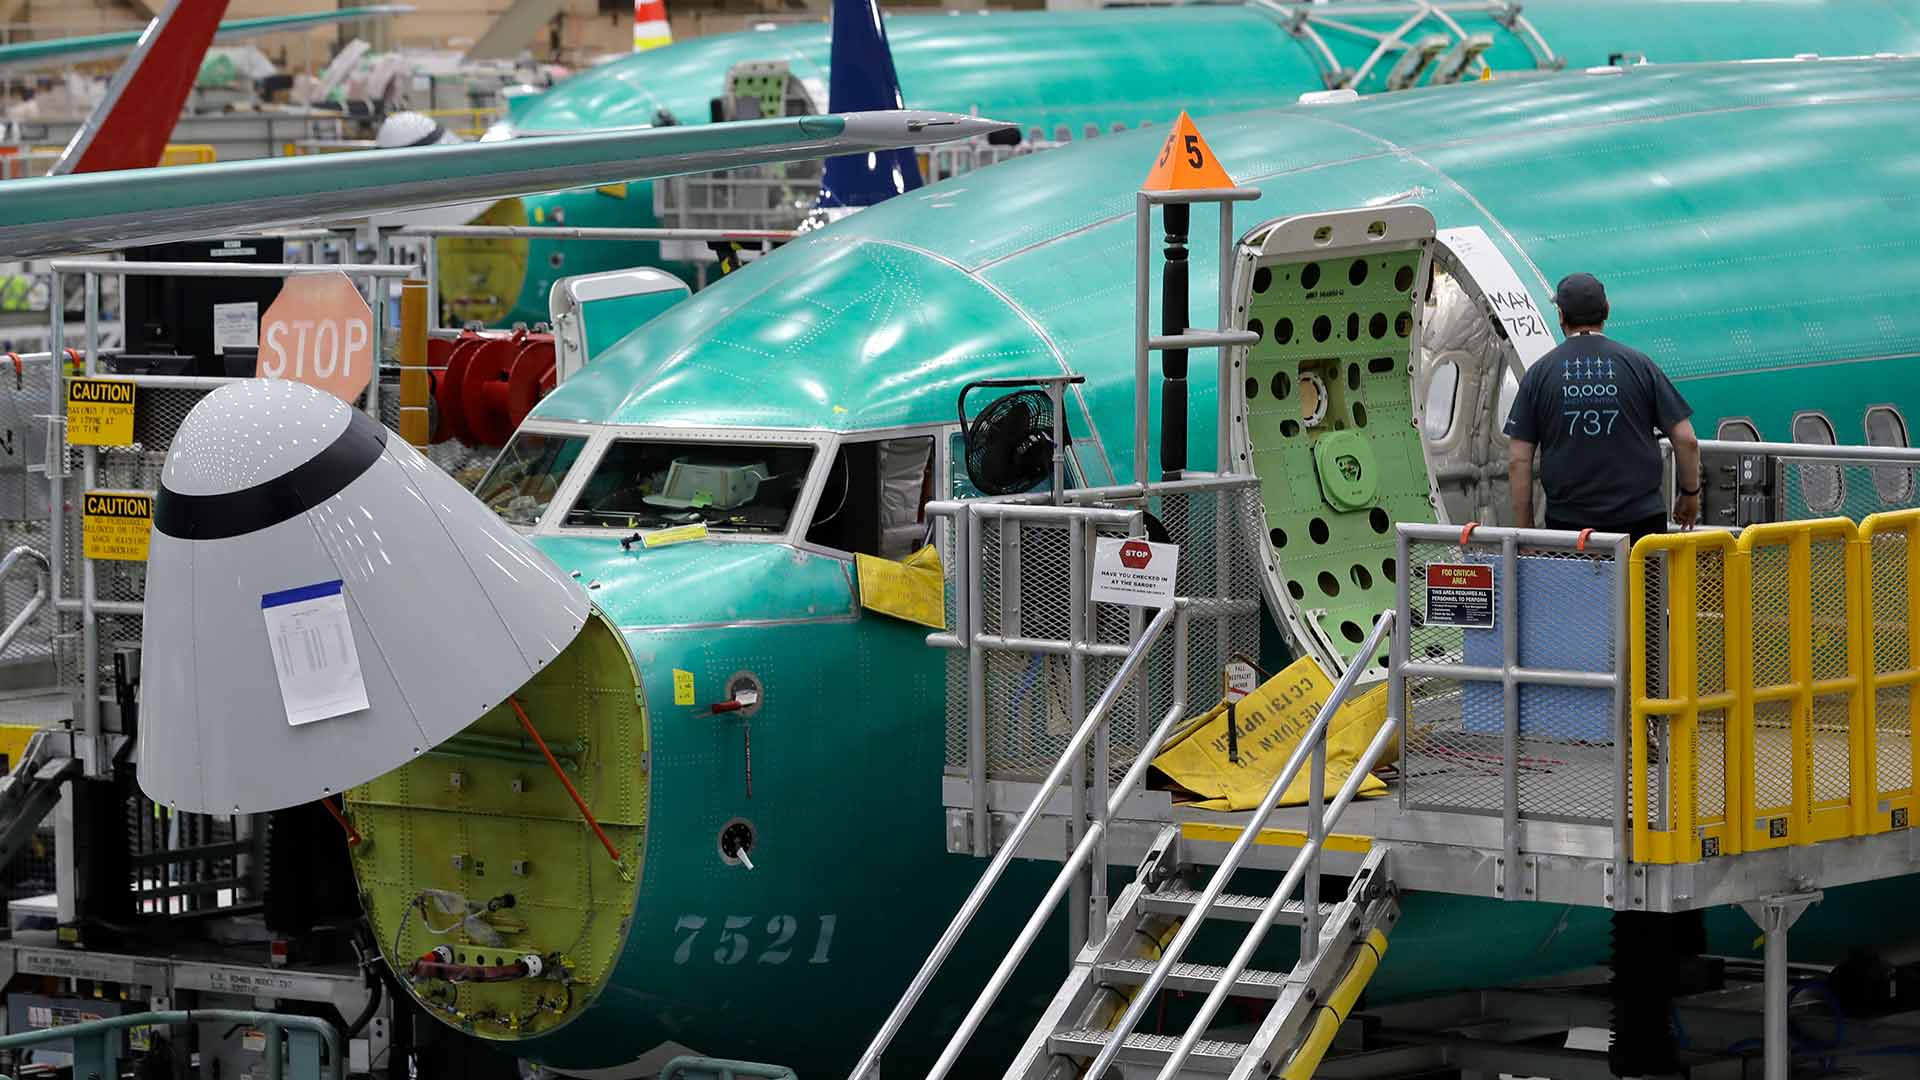 Un fallo del software de control del Boeing 737 MAX 8 causó el accidente de Ethiopian Airlines